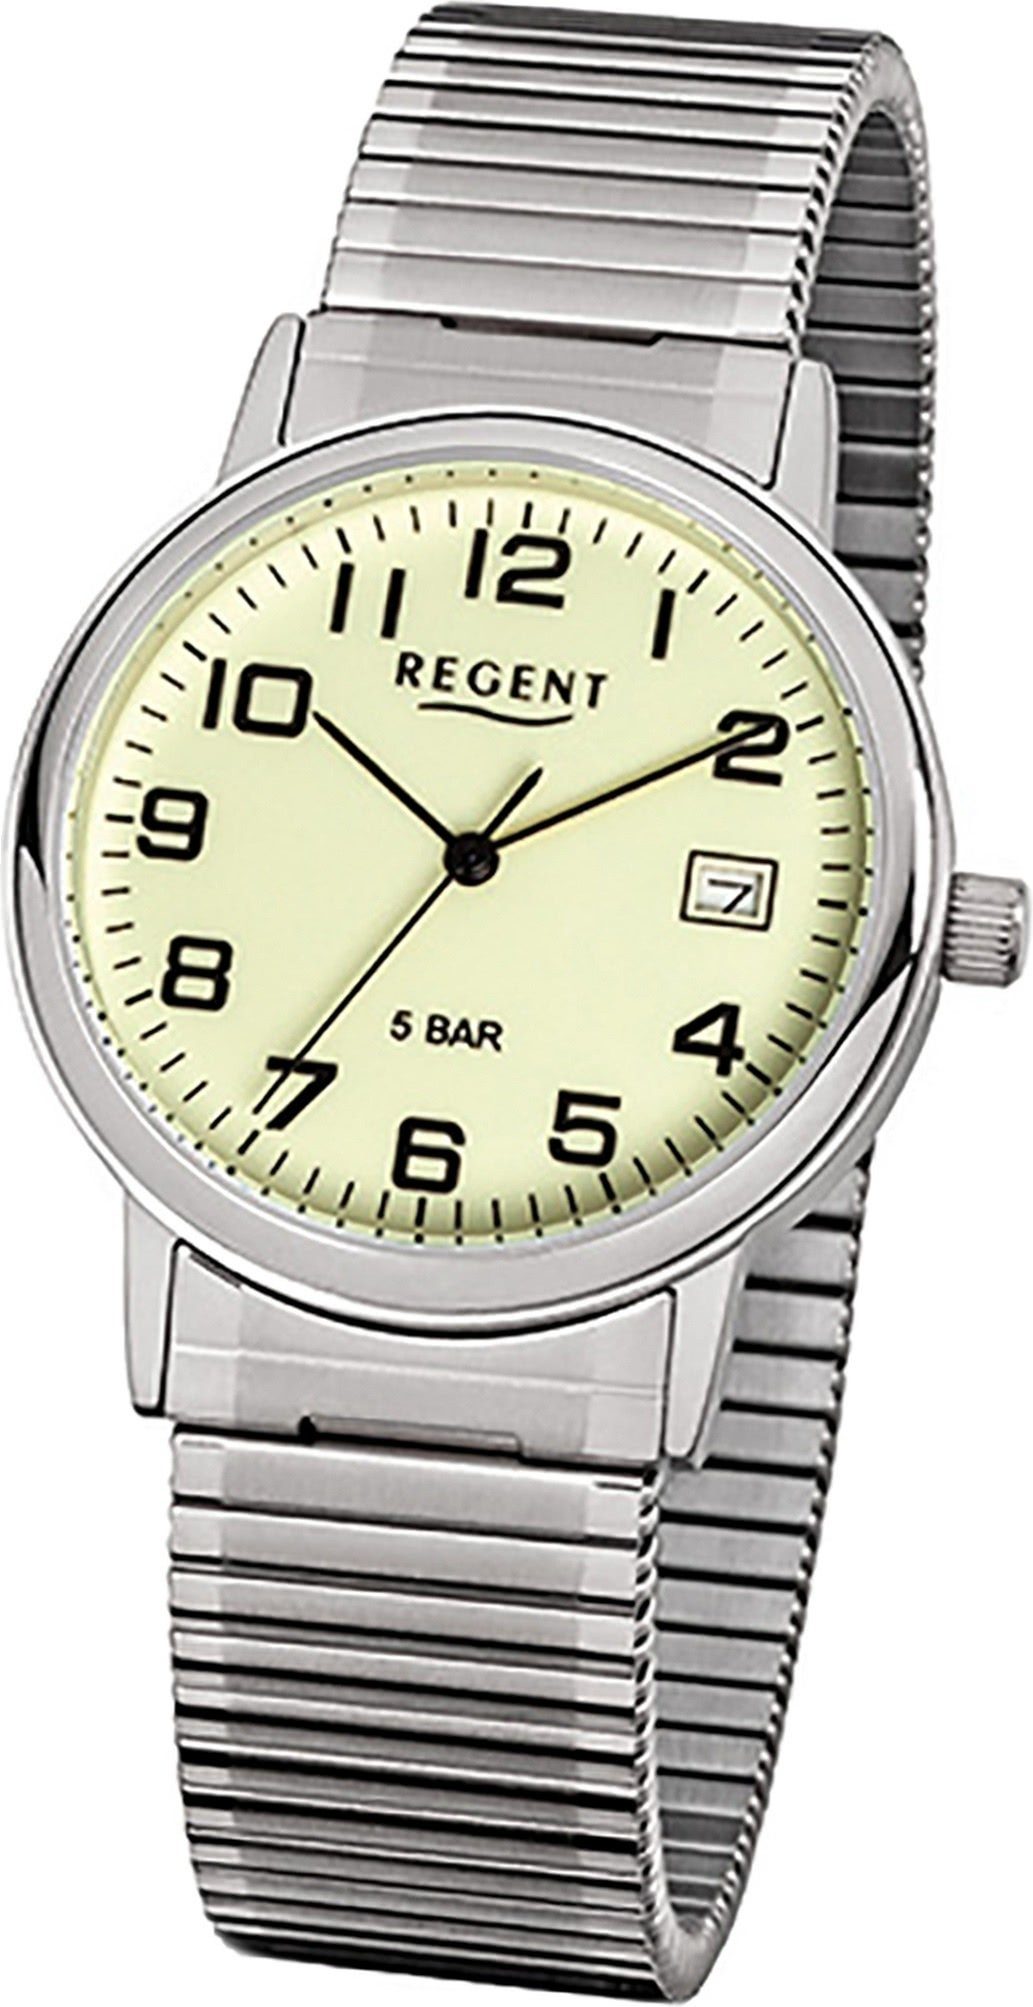 Regent Quarzuhr Regent Stahl Herren Uhr F-706 Quarzuhr, Herrenuhr Edelstahlarmband silber, rundes Gehäuse, mittel (ca. 35mm)